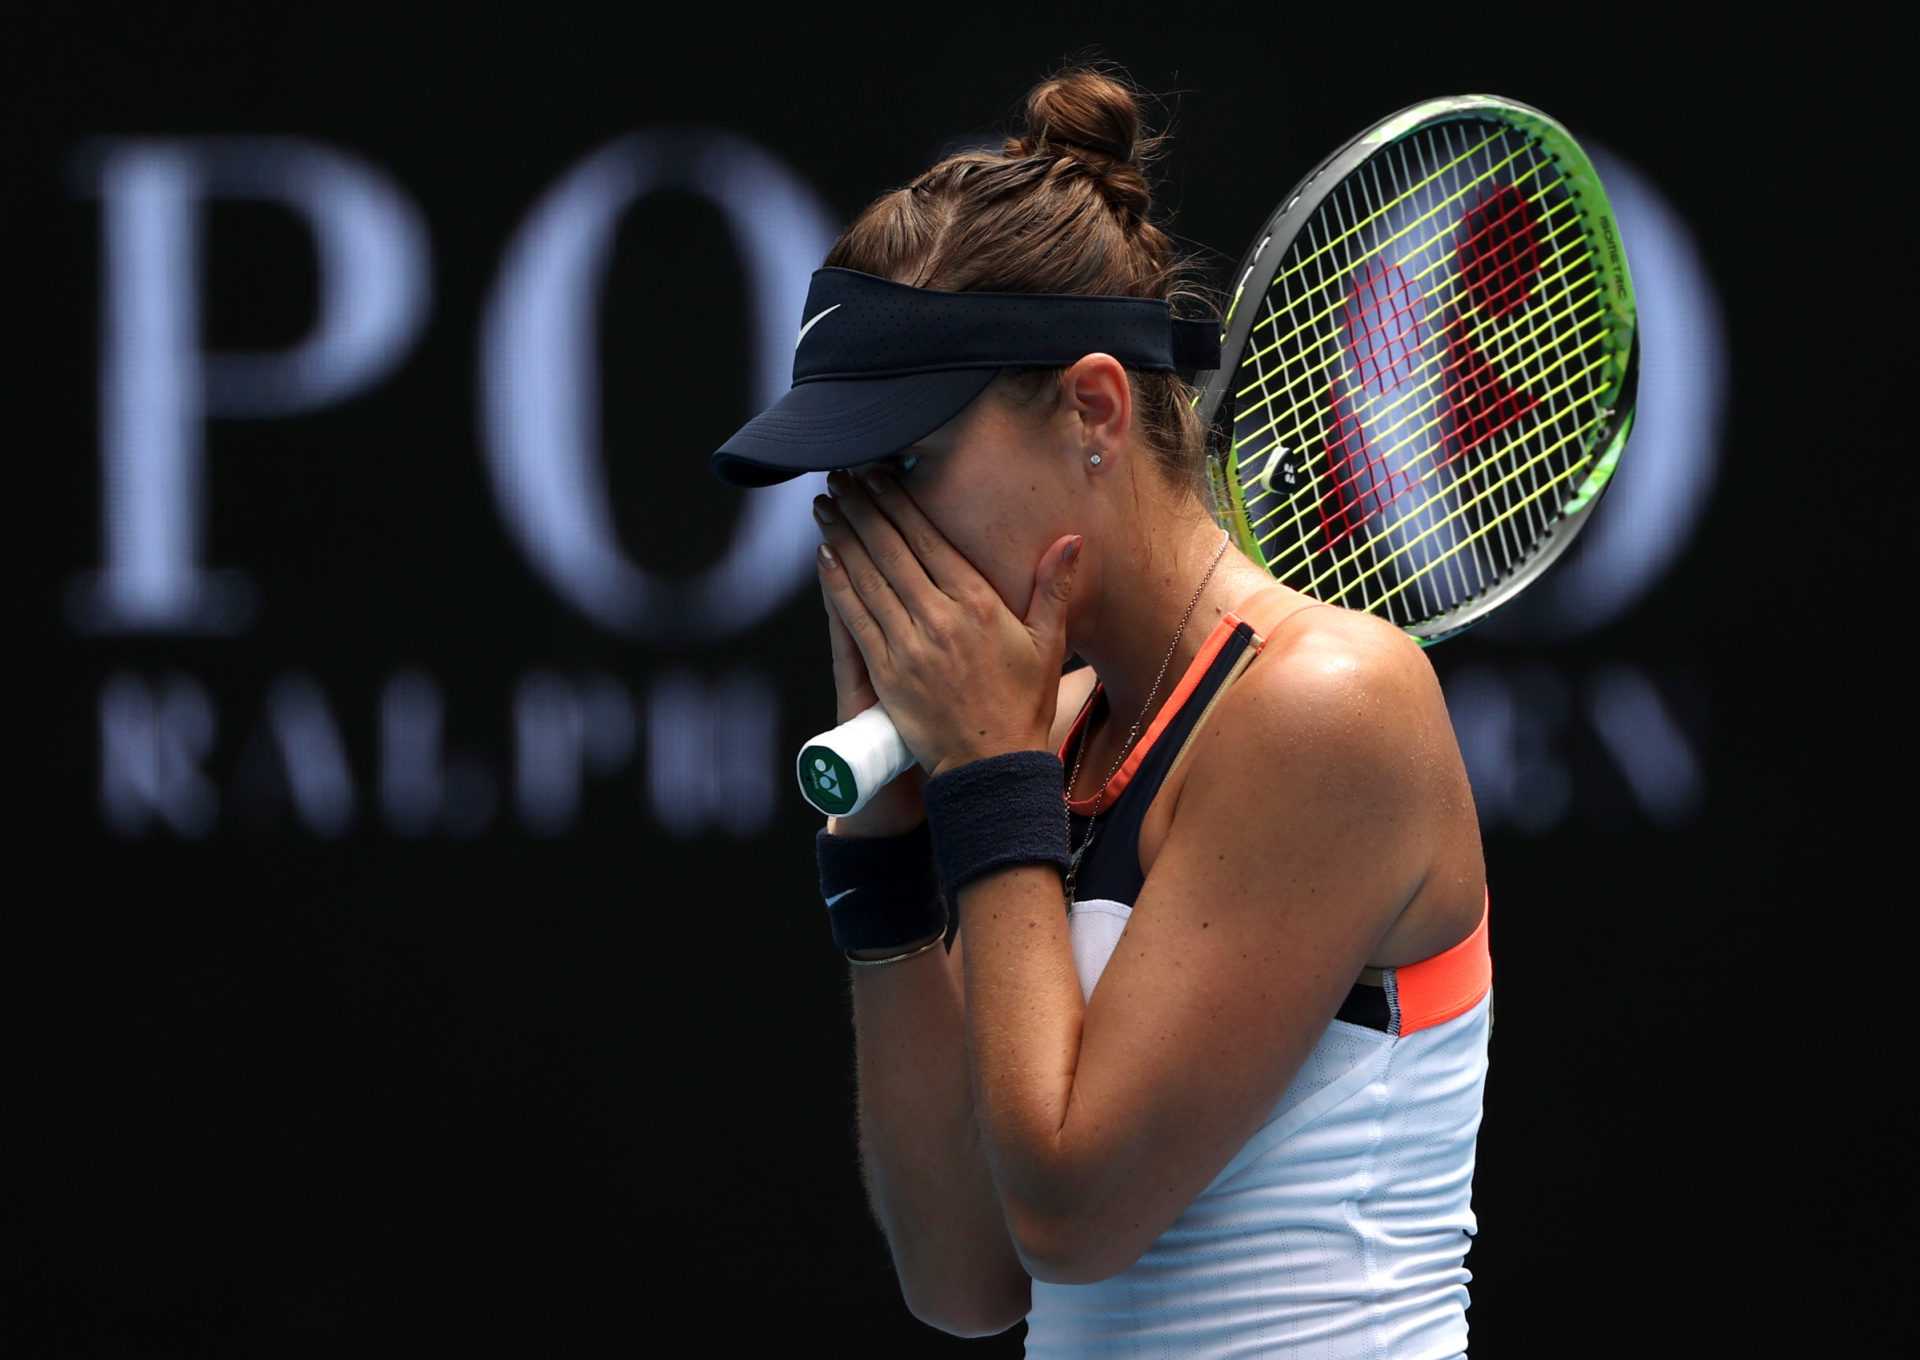 Belinda Bencic rencontre à nouveau une défaite embarrassante à l'Open d'Australie 2021